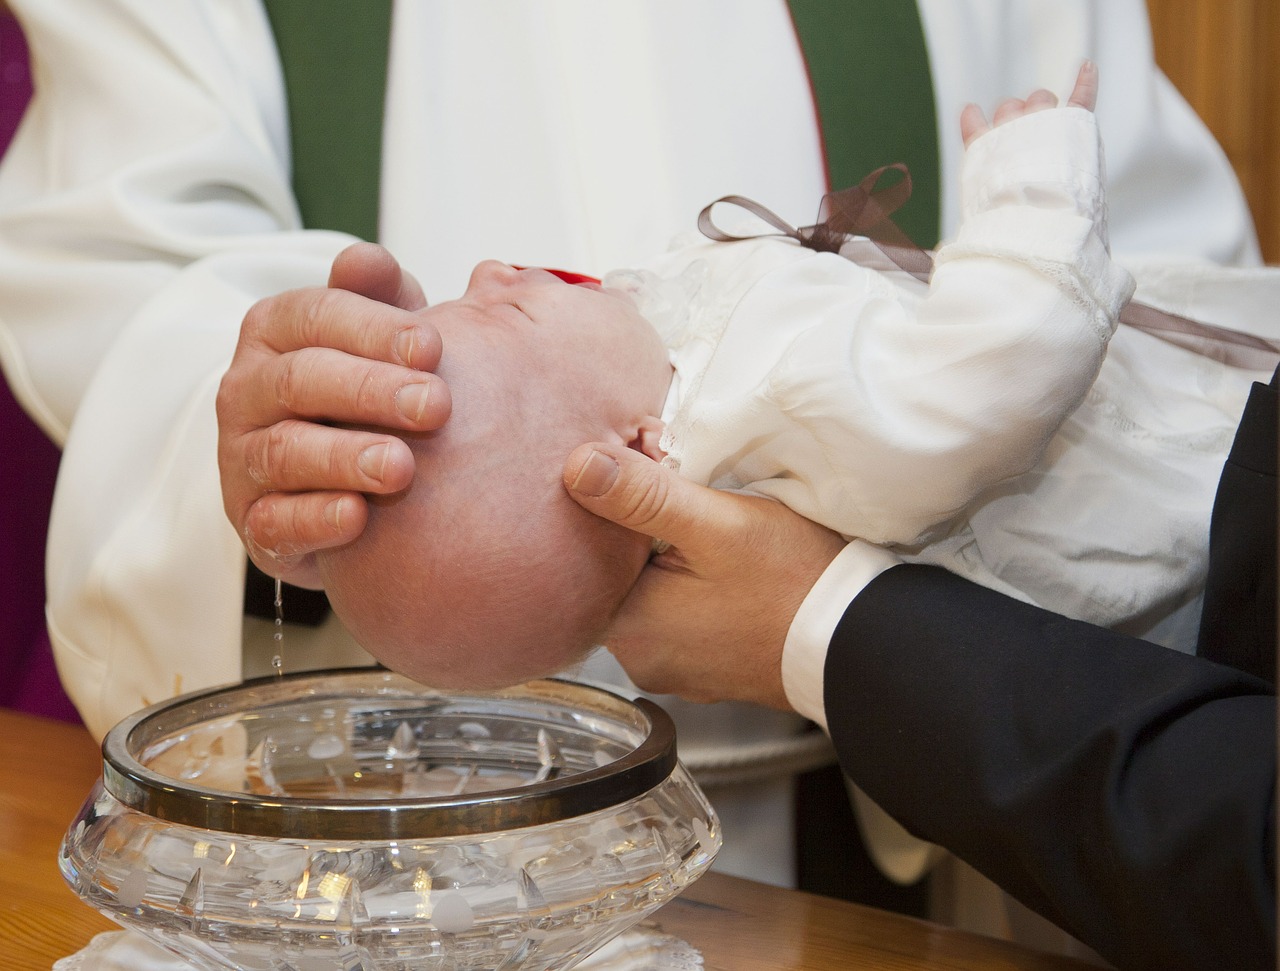 Stavano celebrando un battesimo nonostante il divieto: denunciati prete e genitori a San Gennaro Vesuviano